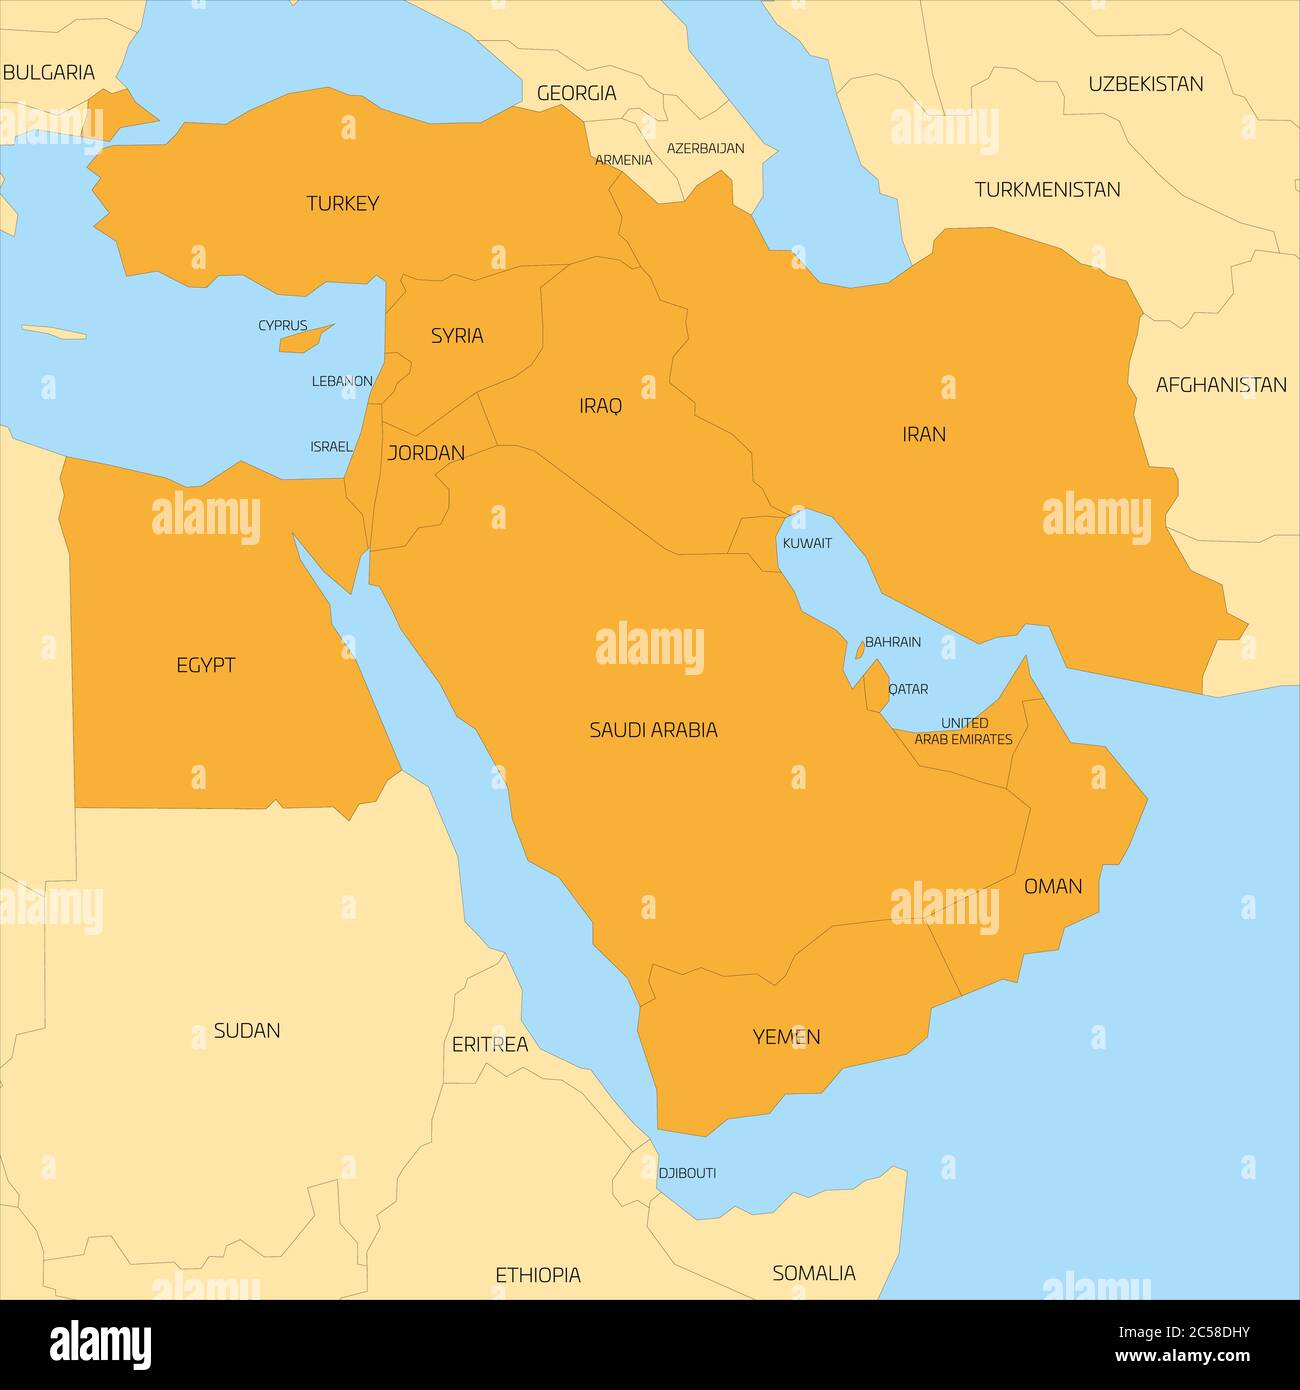 Mappa della regione transcontinentale del Medio Oriente o del Vicino Oriente con l'evidenziazione arancione dei paesi dell'Asia occidentale, della Turchia, di Cipro e dell'Egitto. Mappa piatta con terra gialla, sottili bordi neri e mare blu. Illustrazione Vettoriale